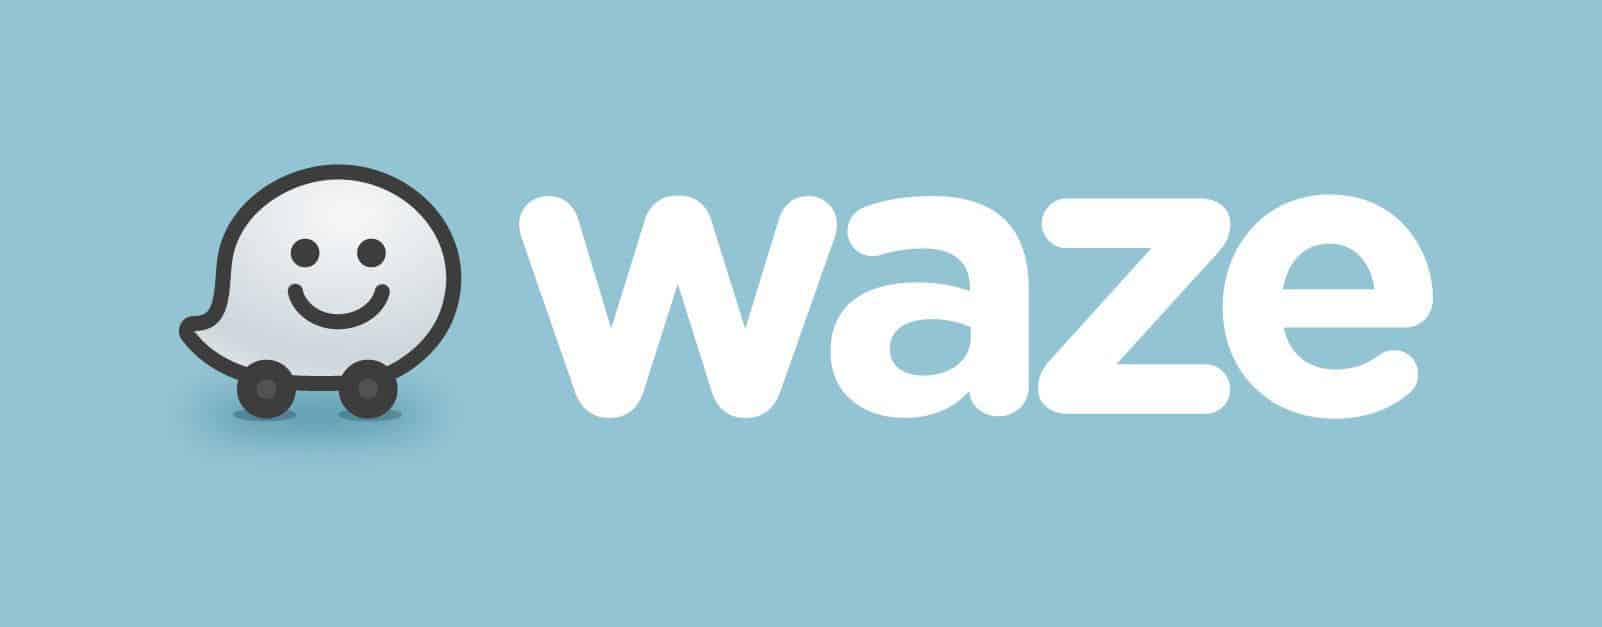 logo Waze